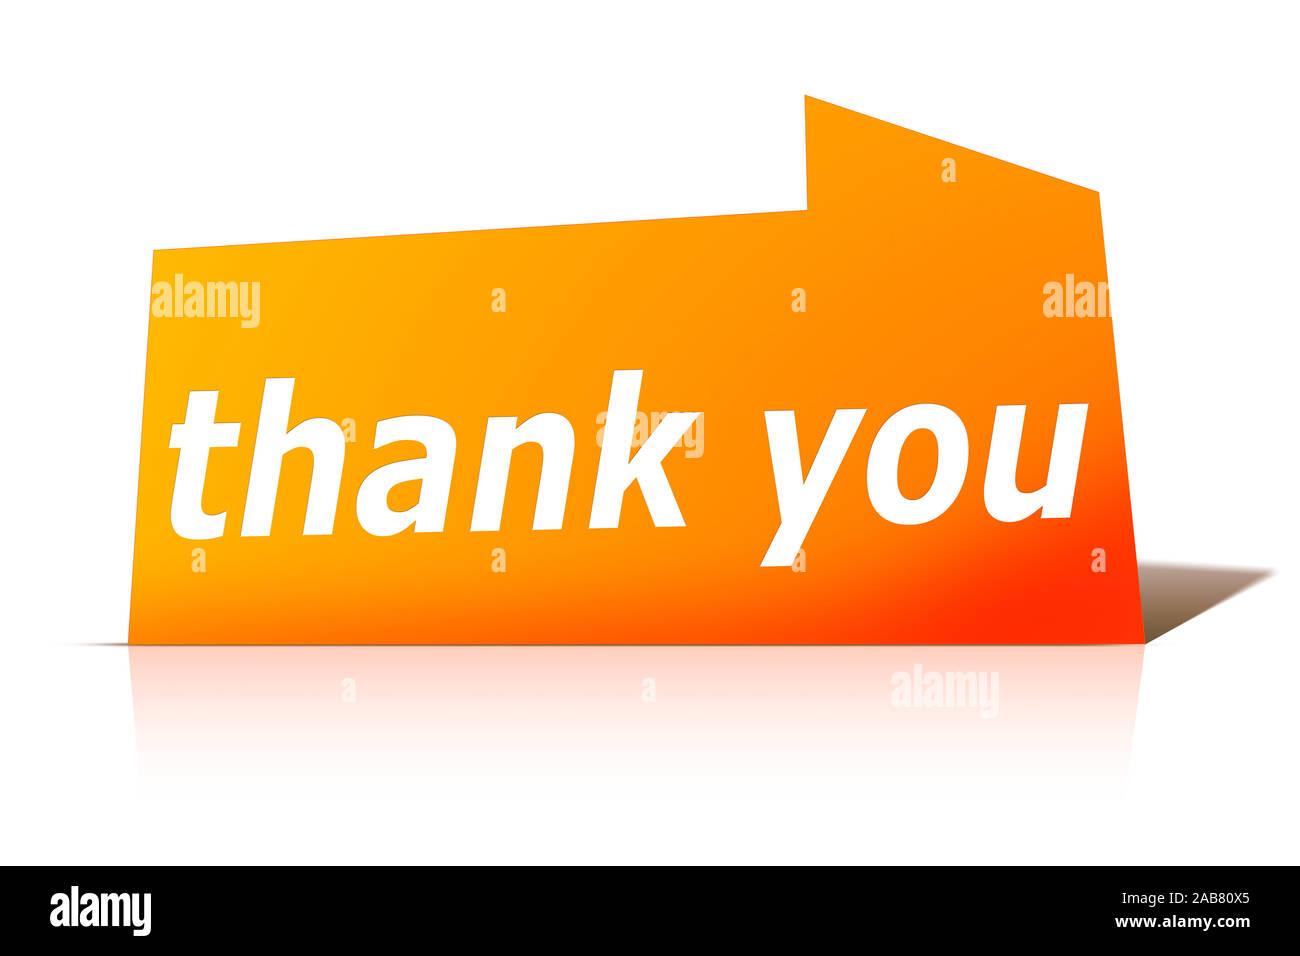 Ein oranges Etikett vor weissem Hintergrund mit der Aufschrift: "thank you" Stock Photo